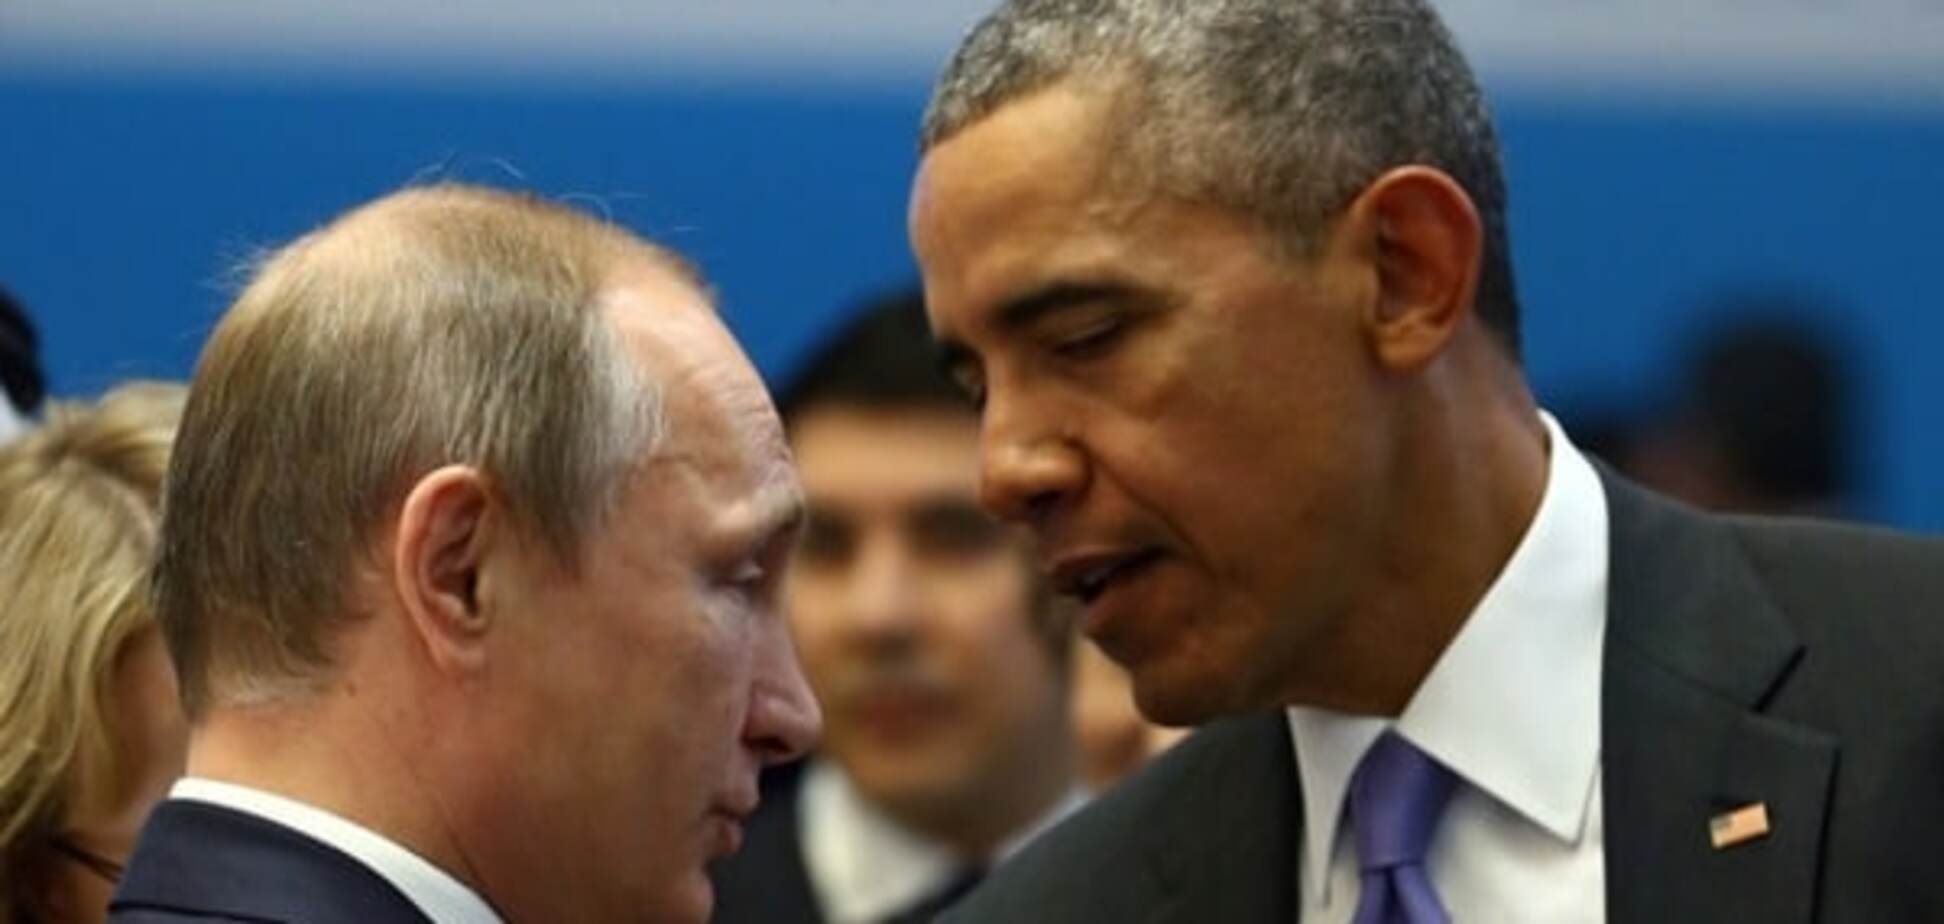 Обама пропонував Путіну припинити конфлікт навколо України - Керрі